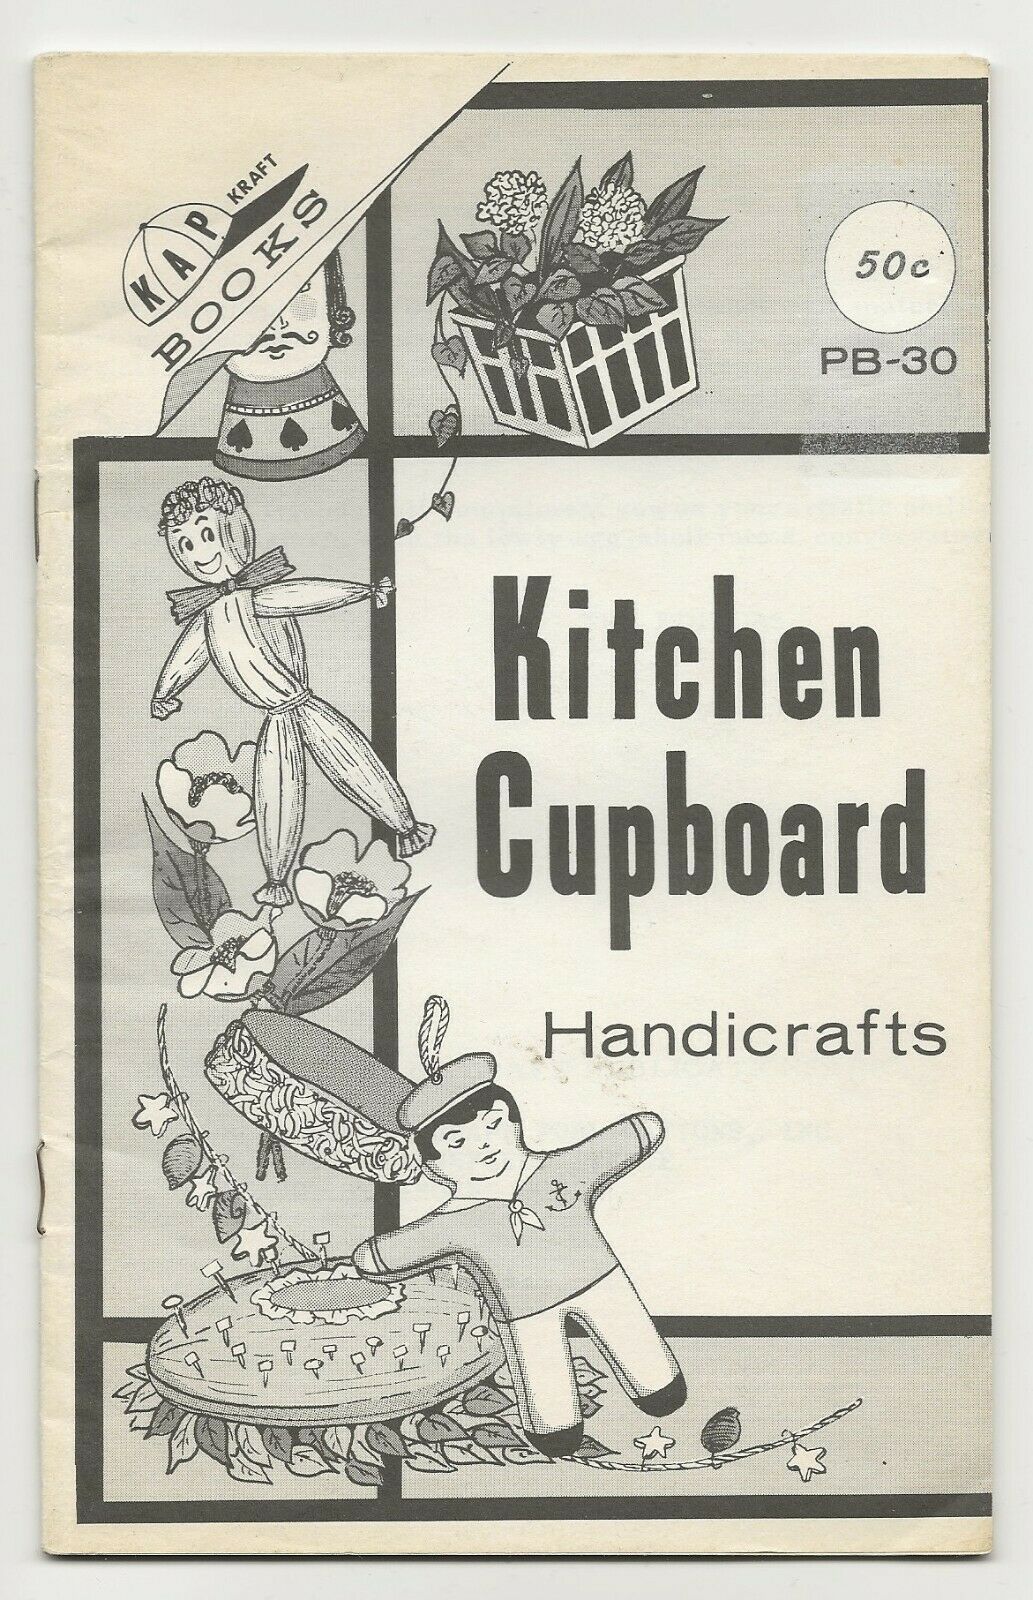 Kap Craft Book Vintage 1971 Kitchen Cupboard Handicrafts Easter Egg Decor Pb30